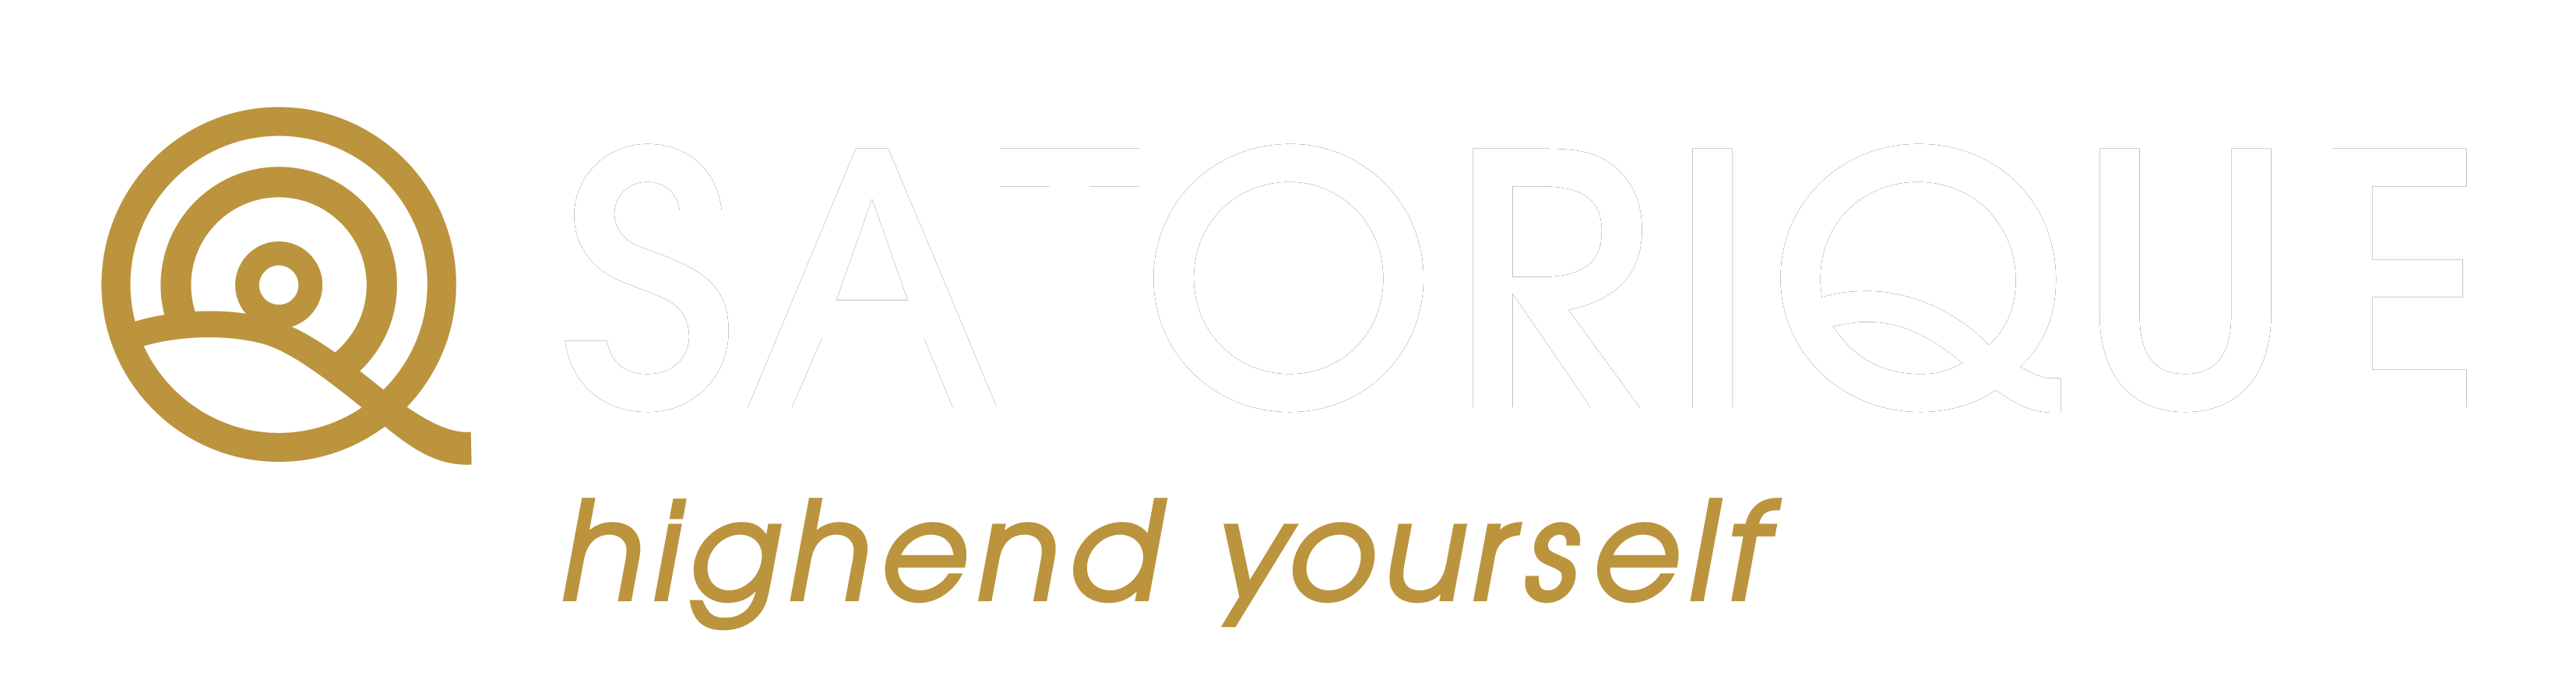 Satorique.de-Logo